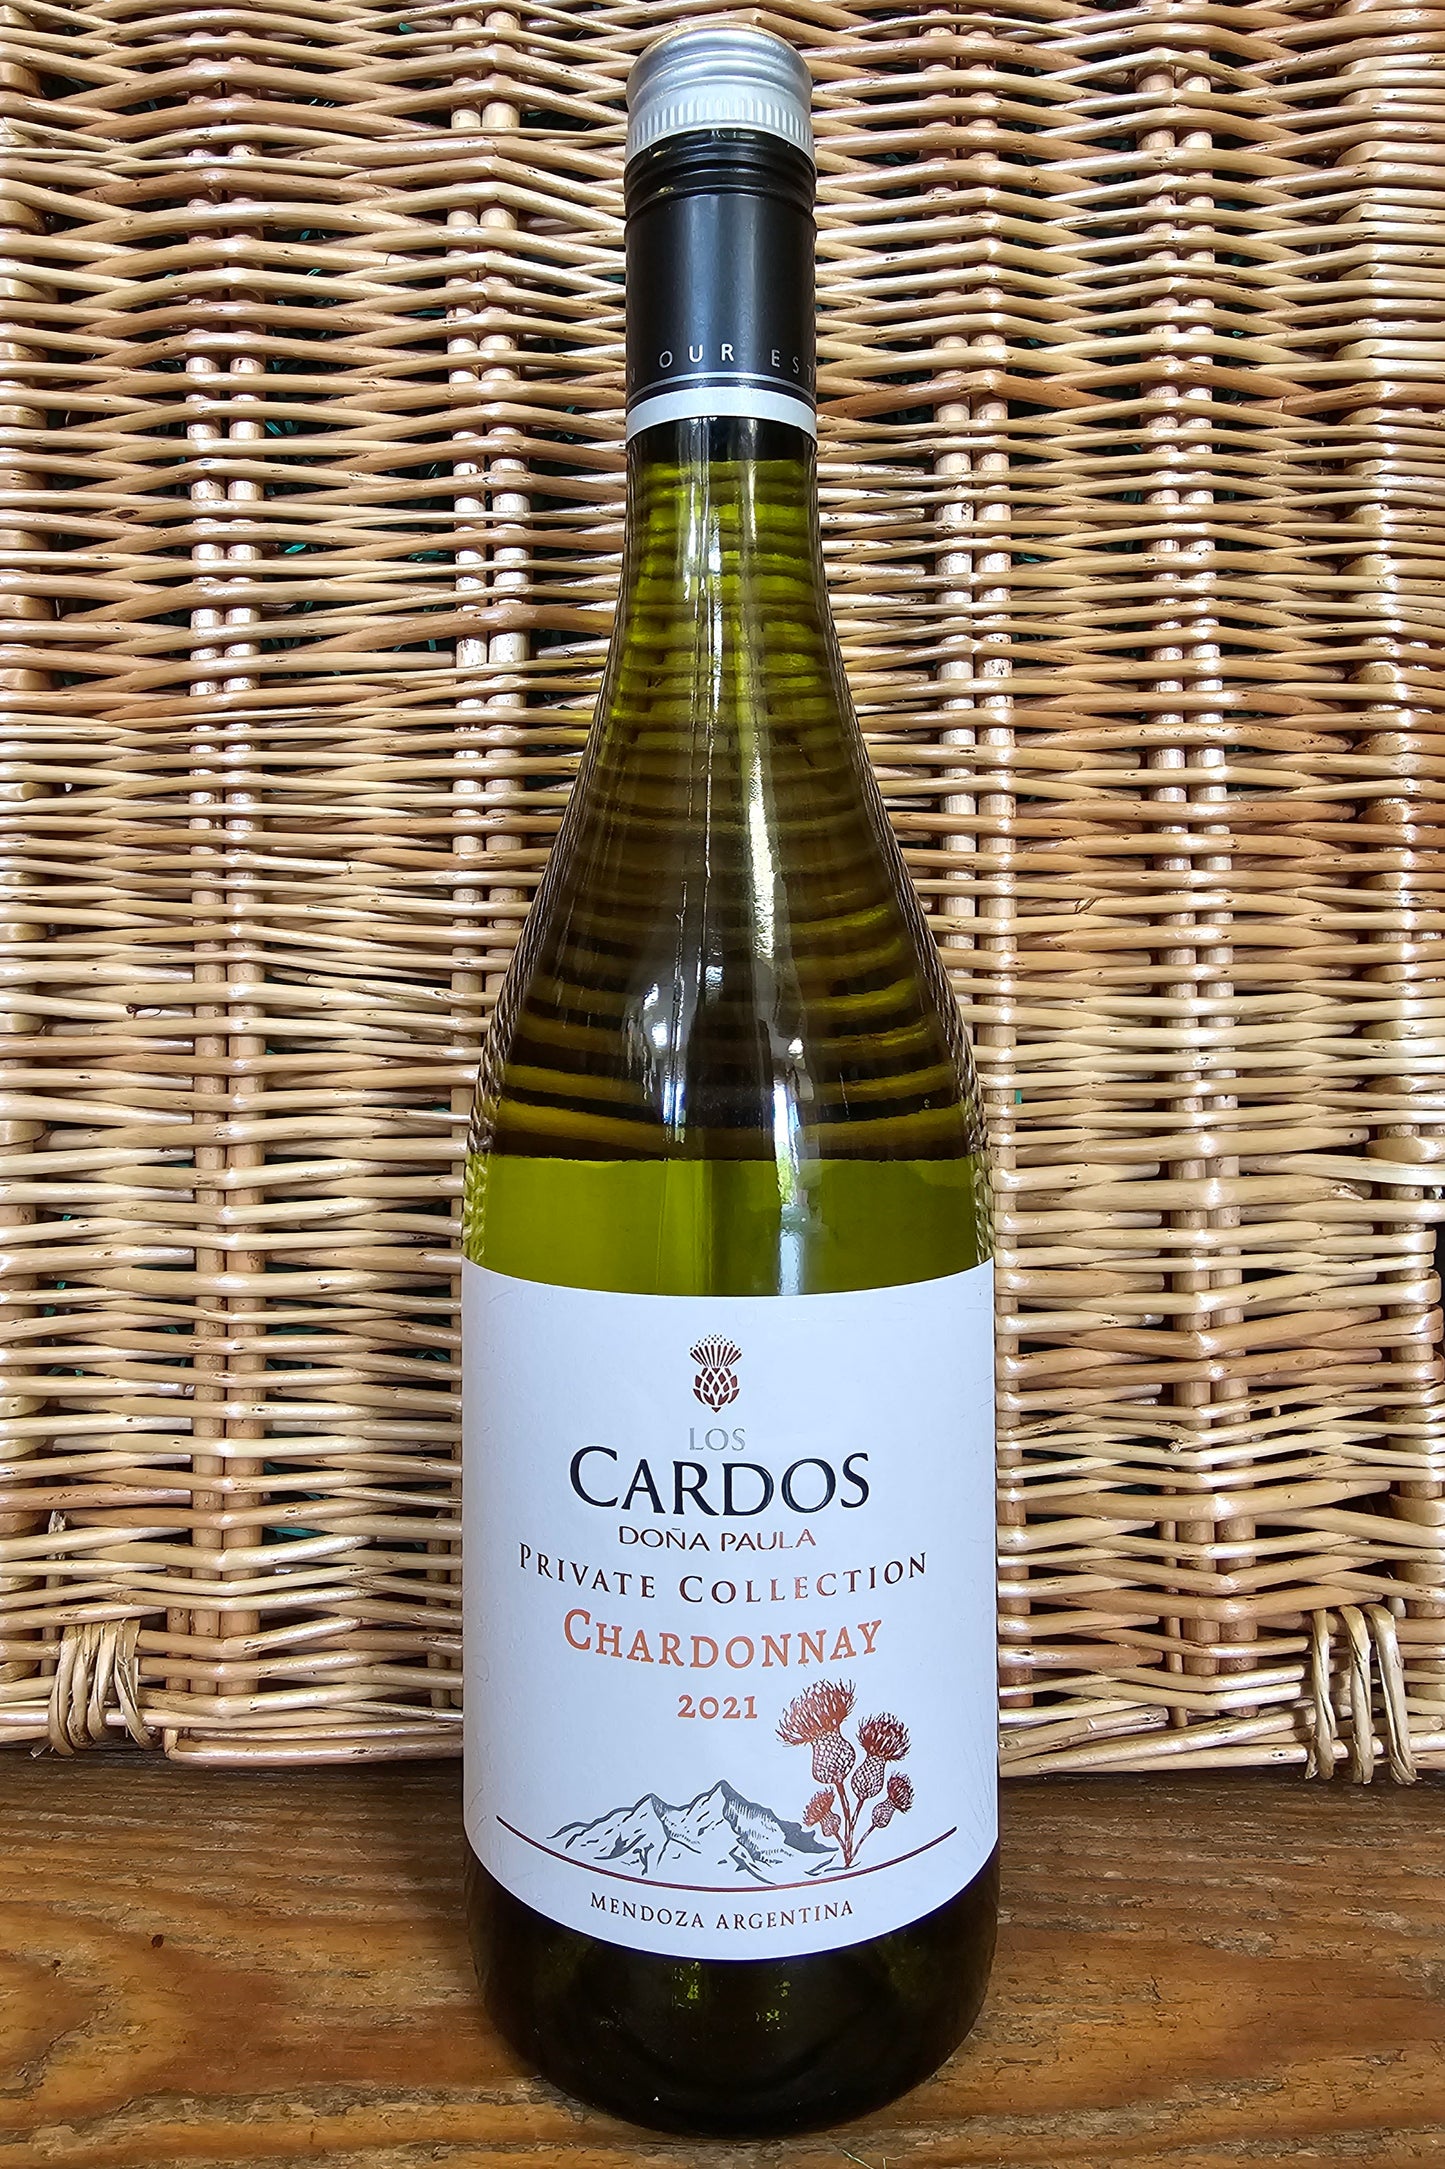 Los Cardos, Private Collection Chardonnay, 2021